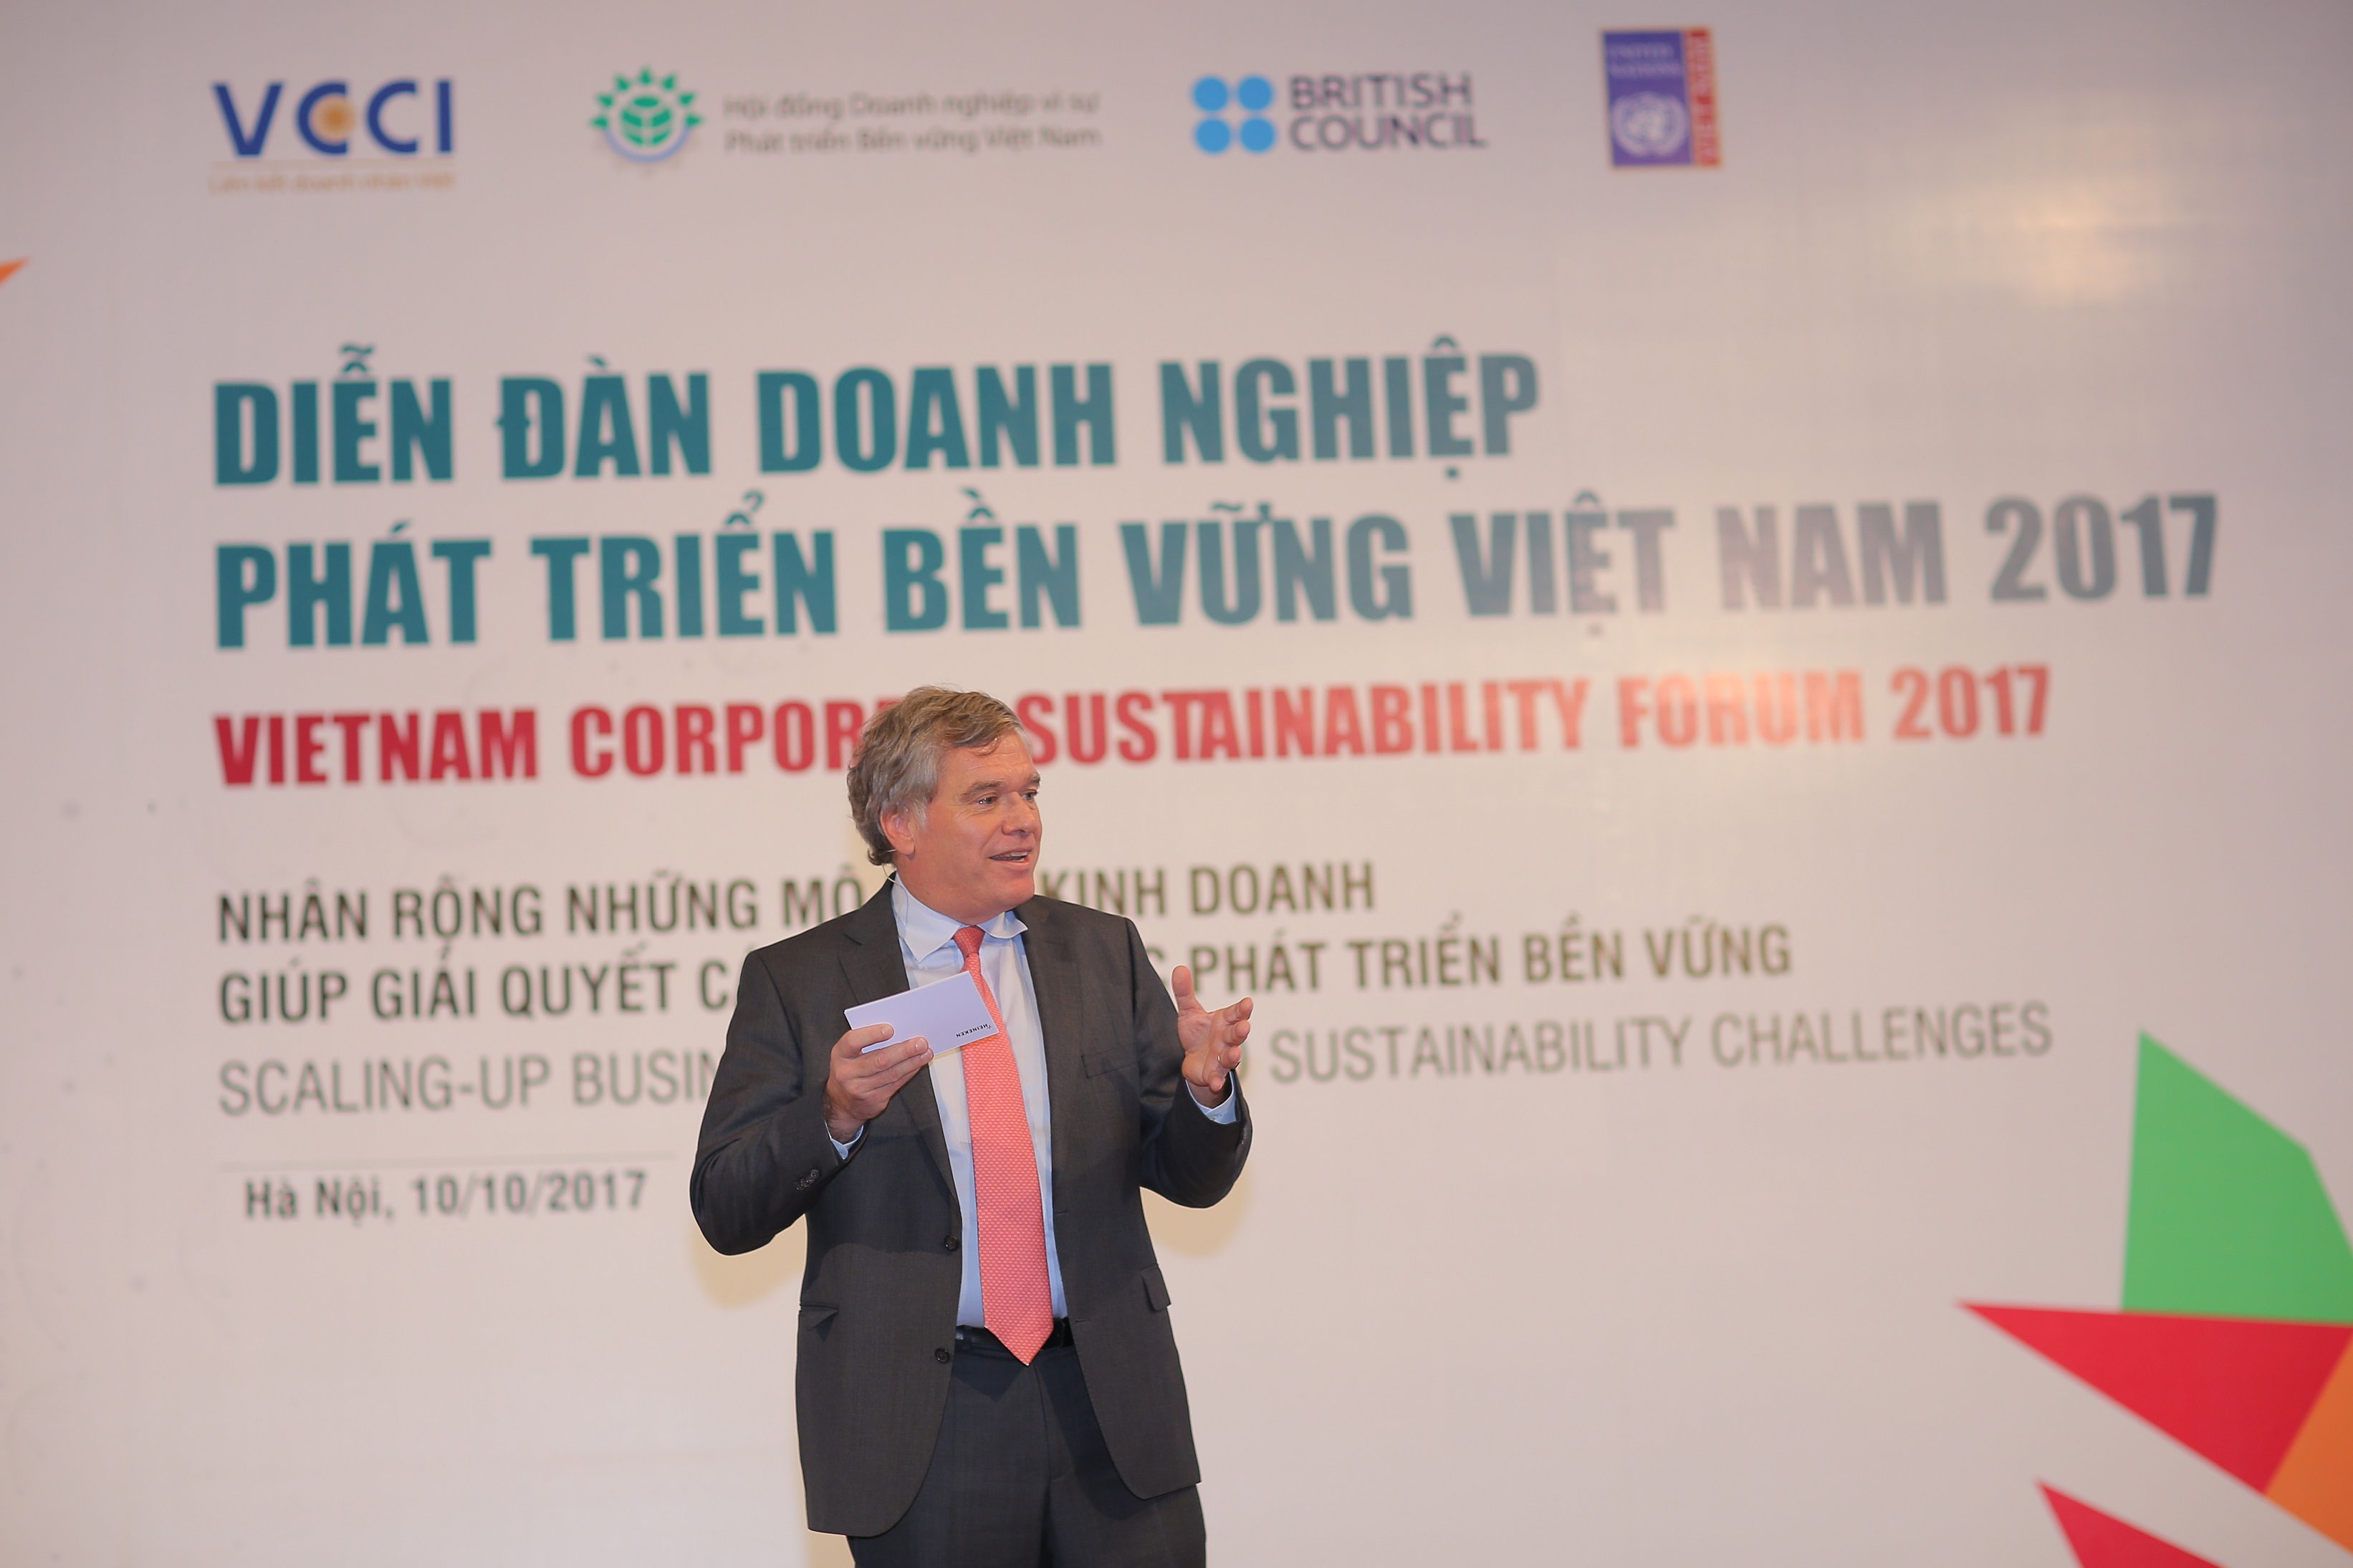 HEINEKEN Vietnam is recognized for sustainability efforts at Vietnam Corporate Sustainability Forum